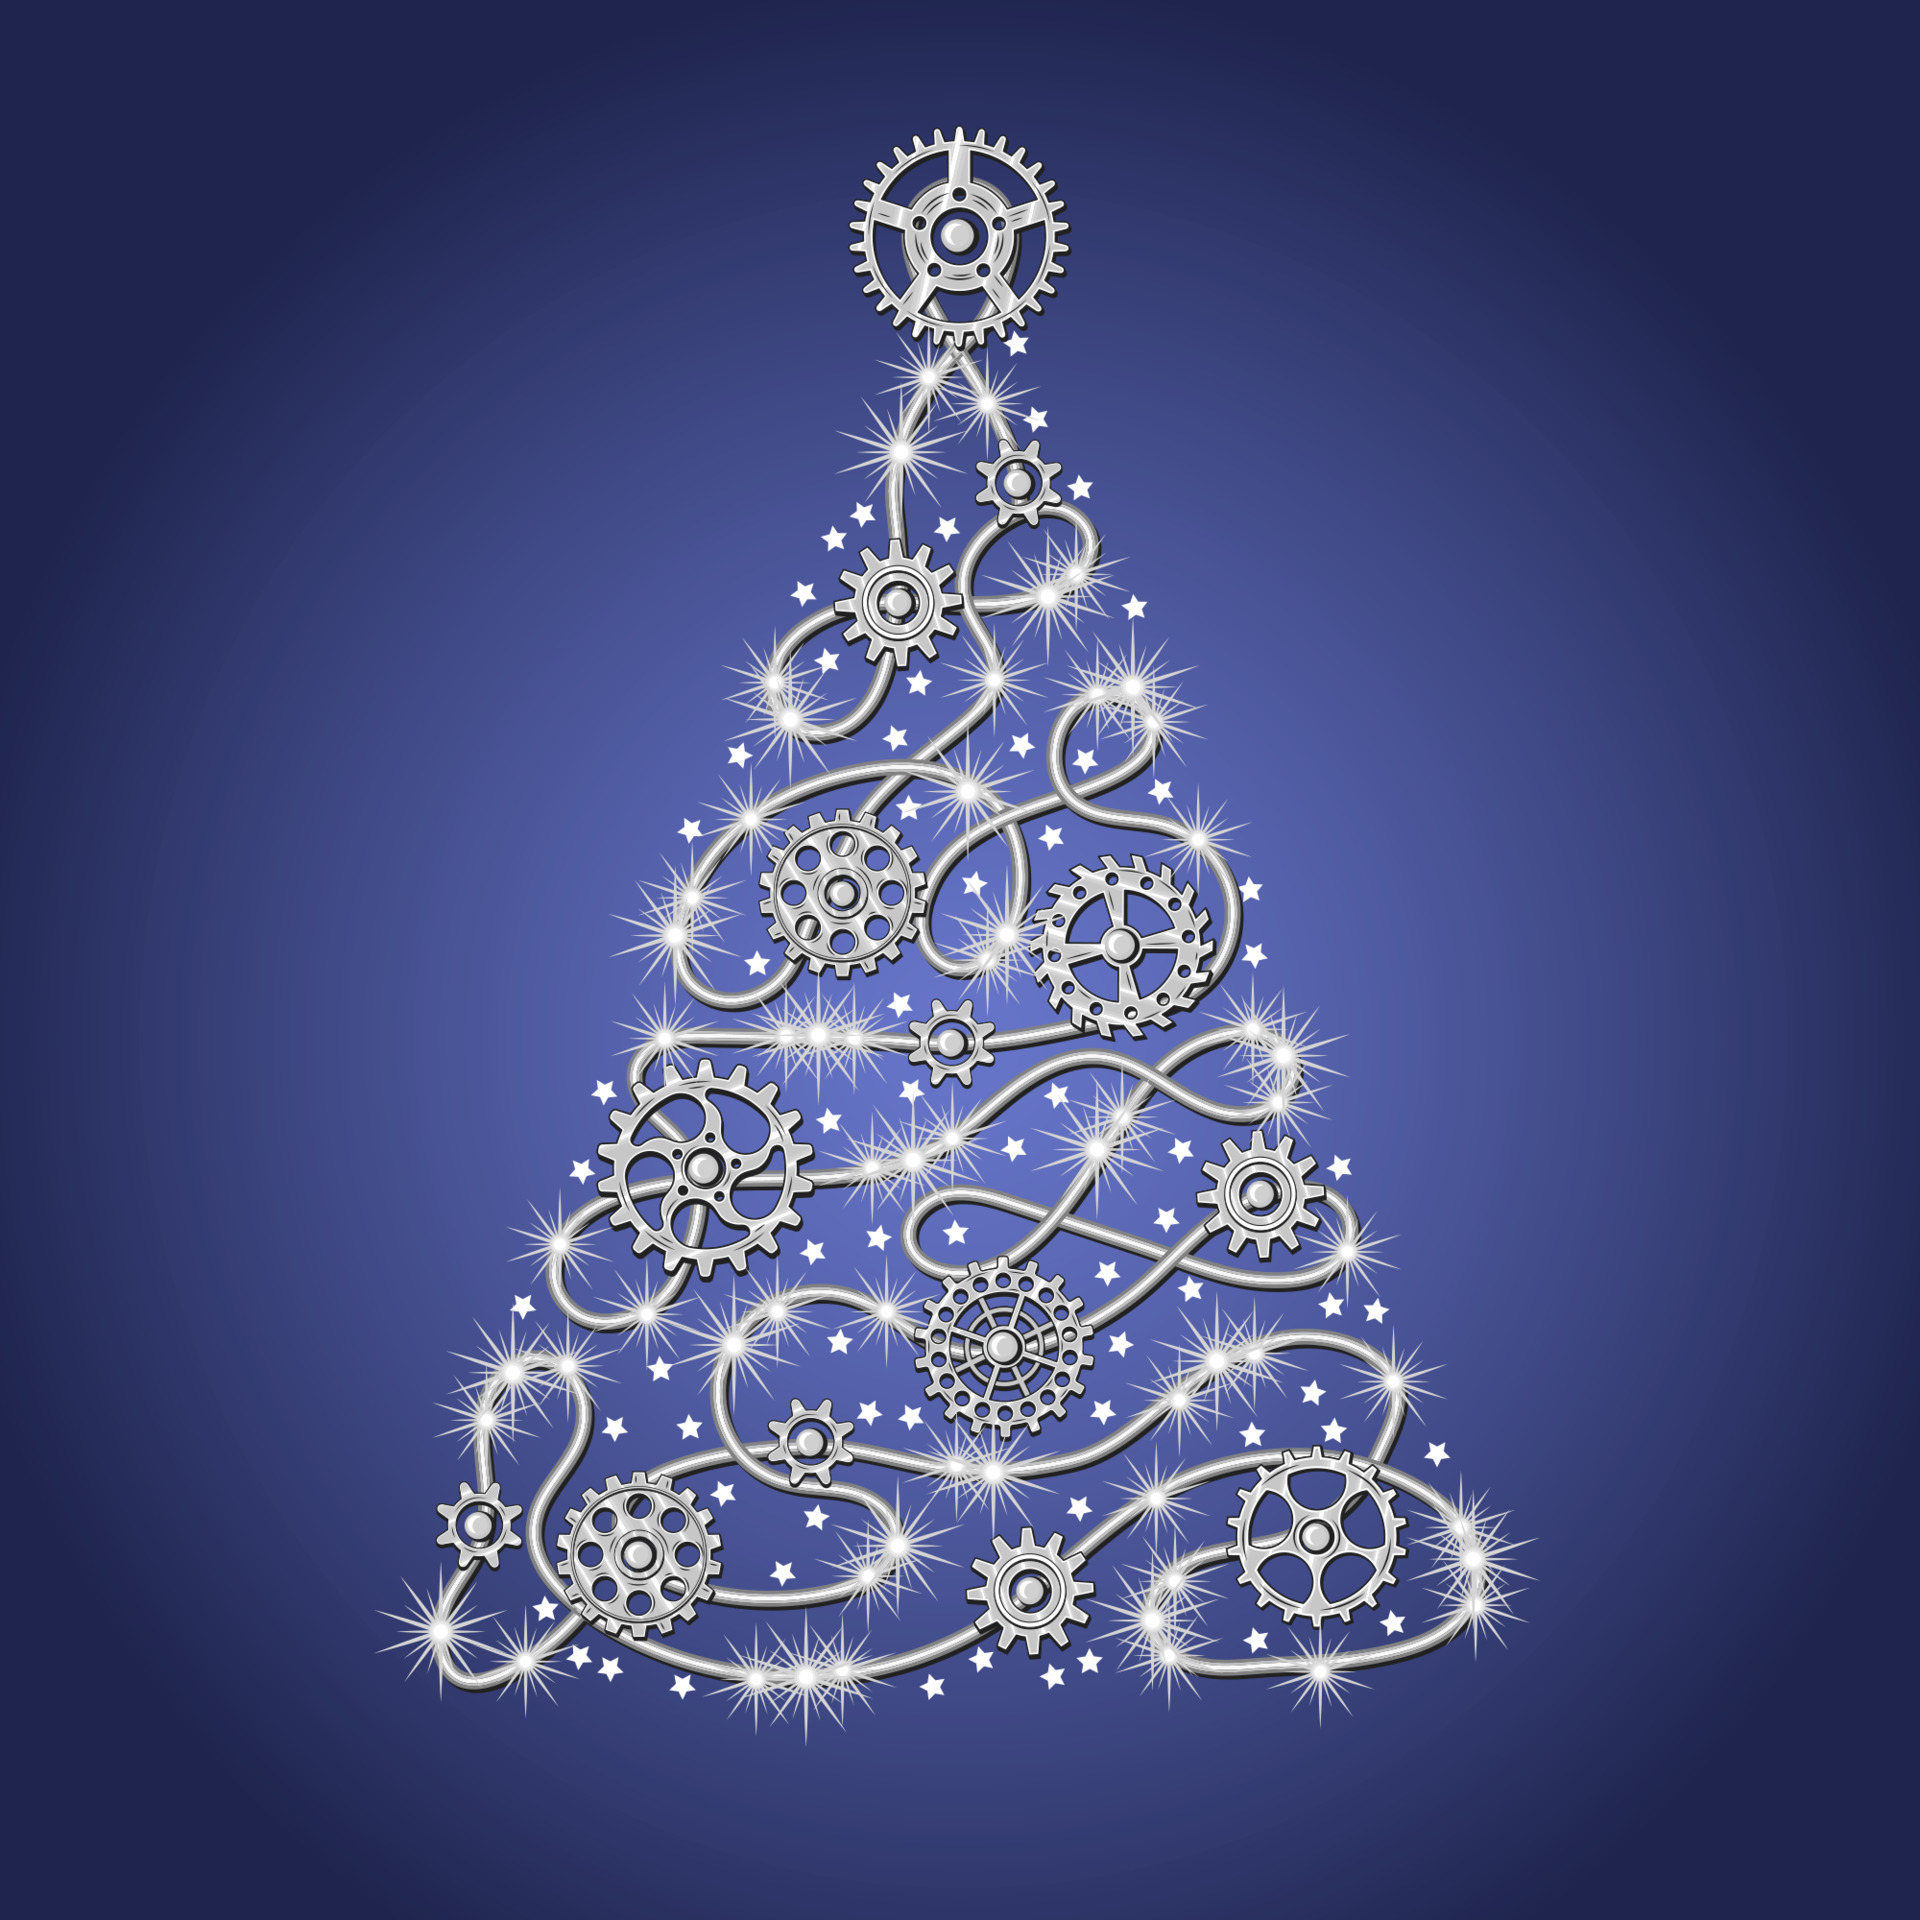 árvore de natal prateada feita de fio de prata com engrenagens prateadas,  brilhos, pequenas estrelas espalhadas sobre um fundo azul no estilo  steampunk. 14197510 Vetor no Vecteezy